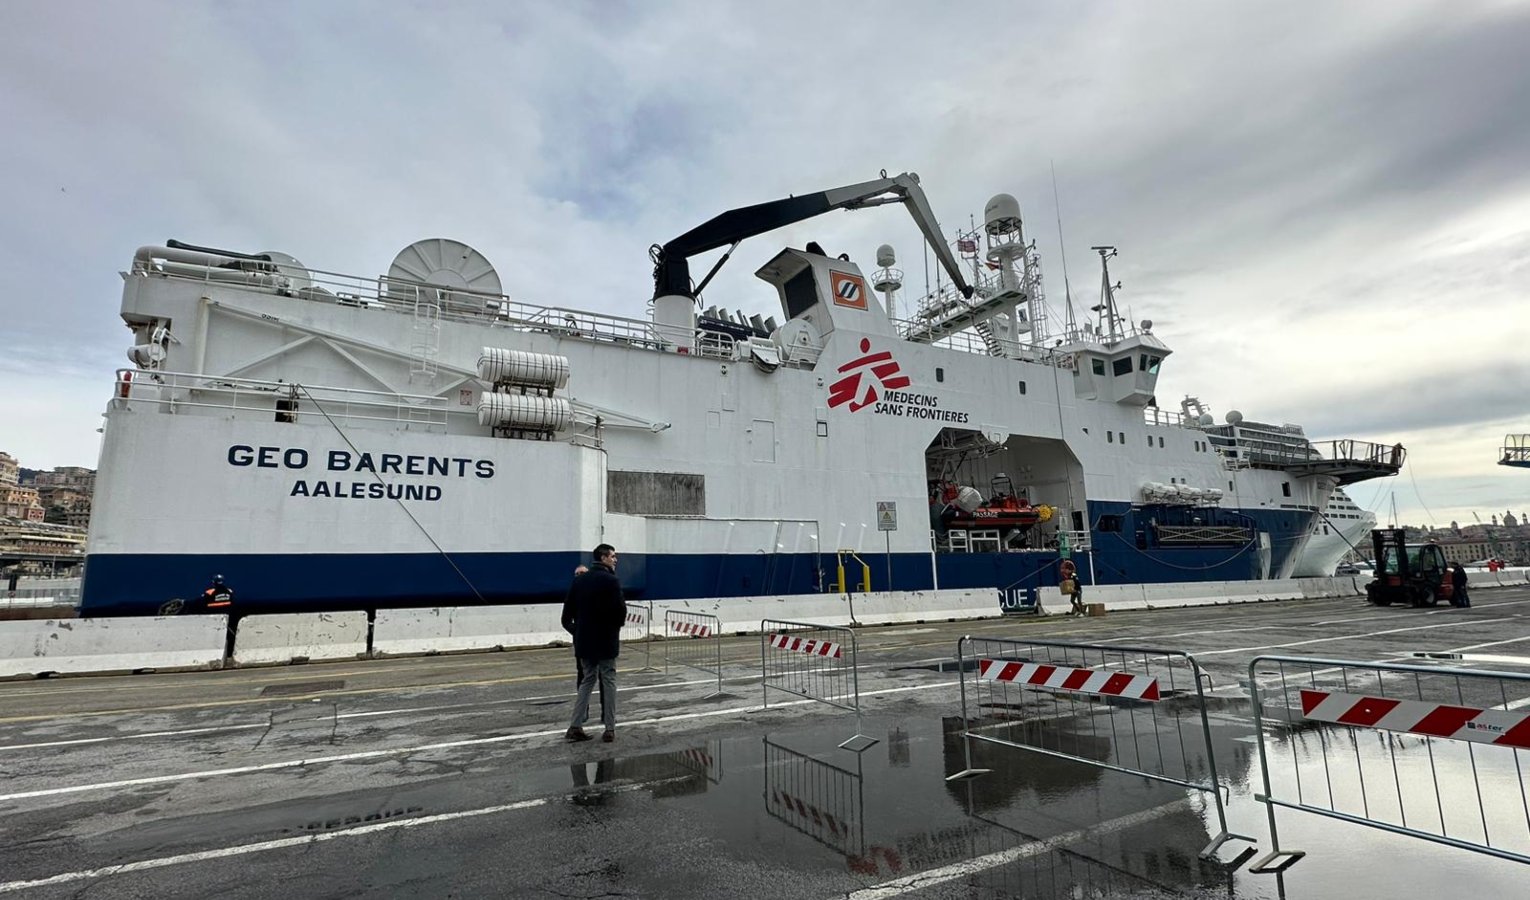 Geo Barents a Genova, tra i 130 migranti anche minori di due anni